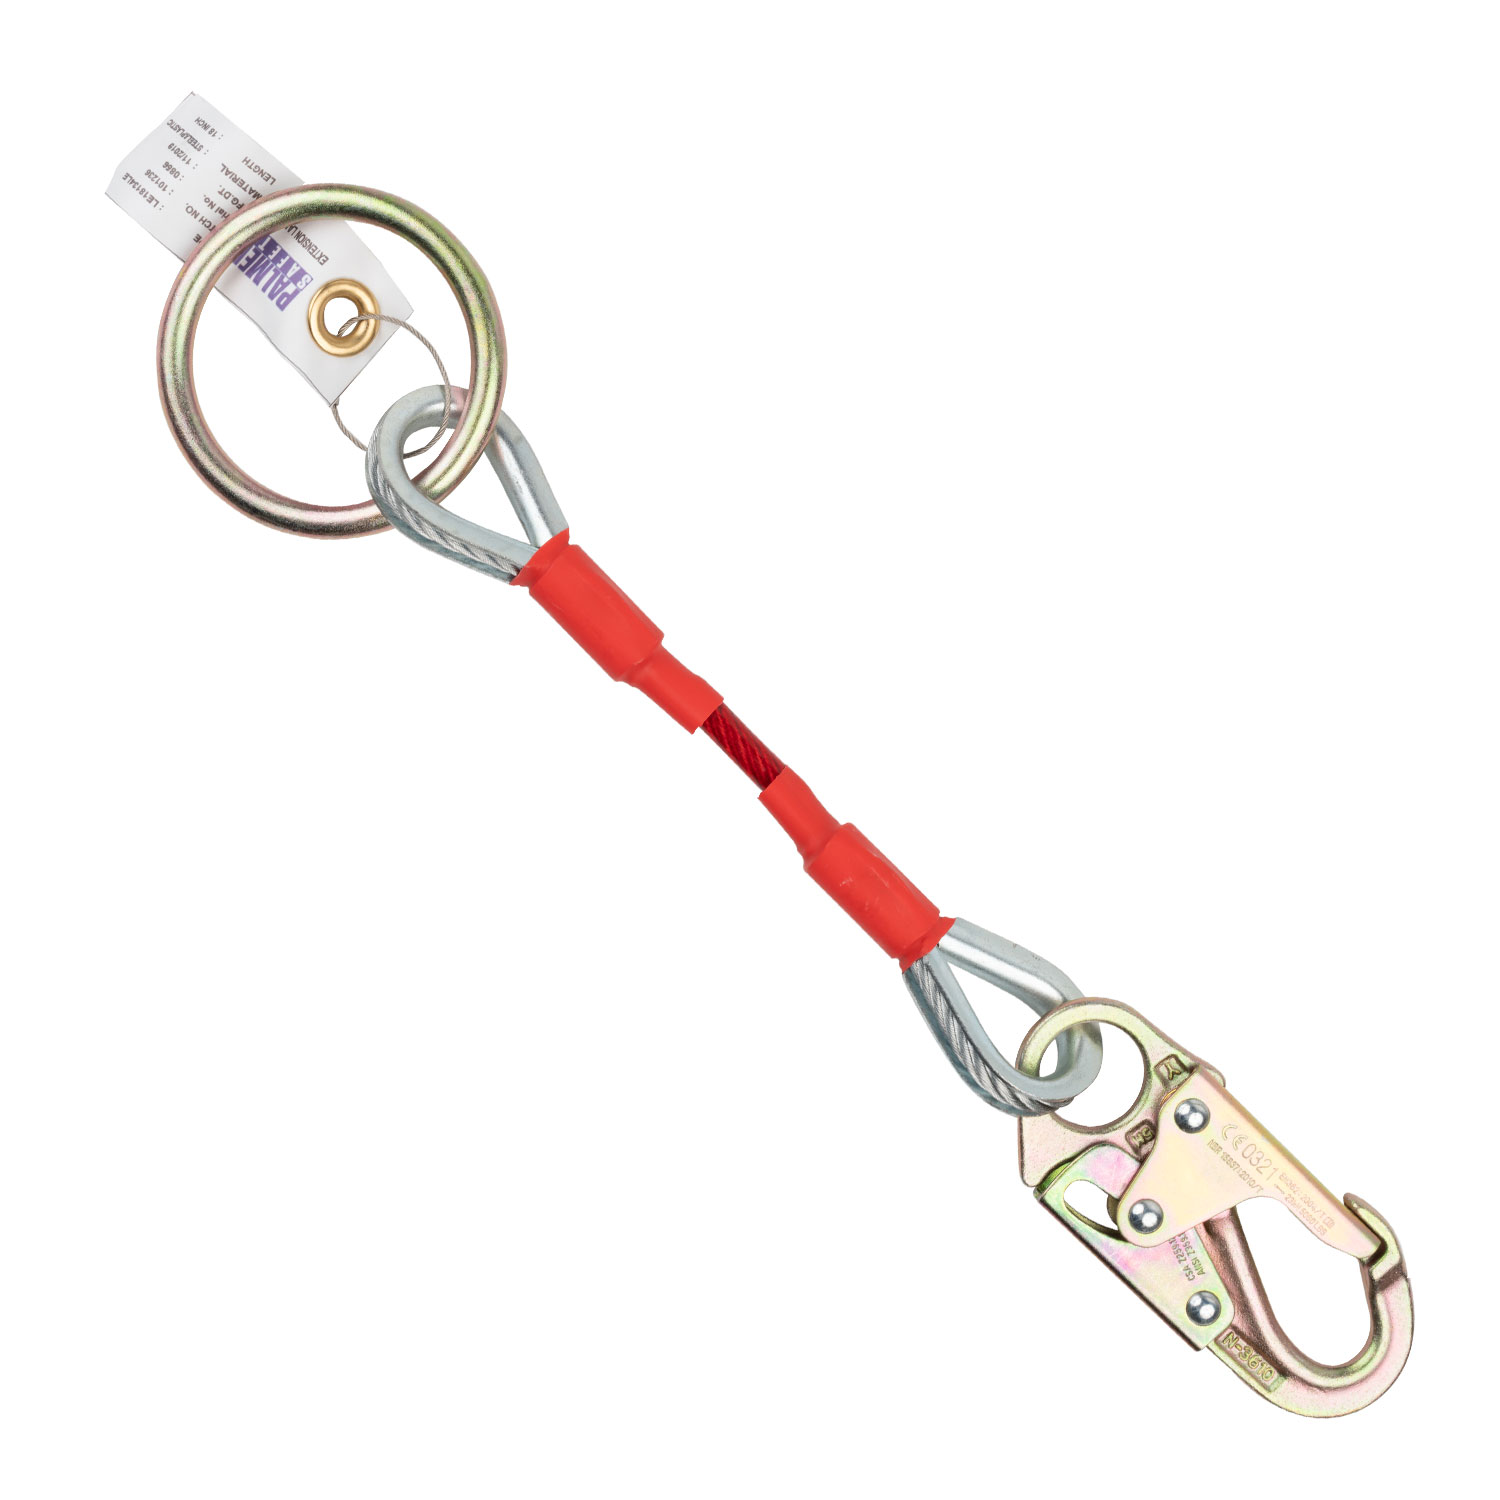 D-Ring Extender w/ Top Loop or Double Lock Hook